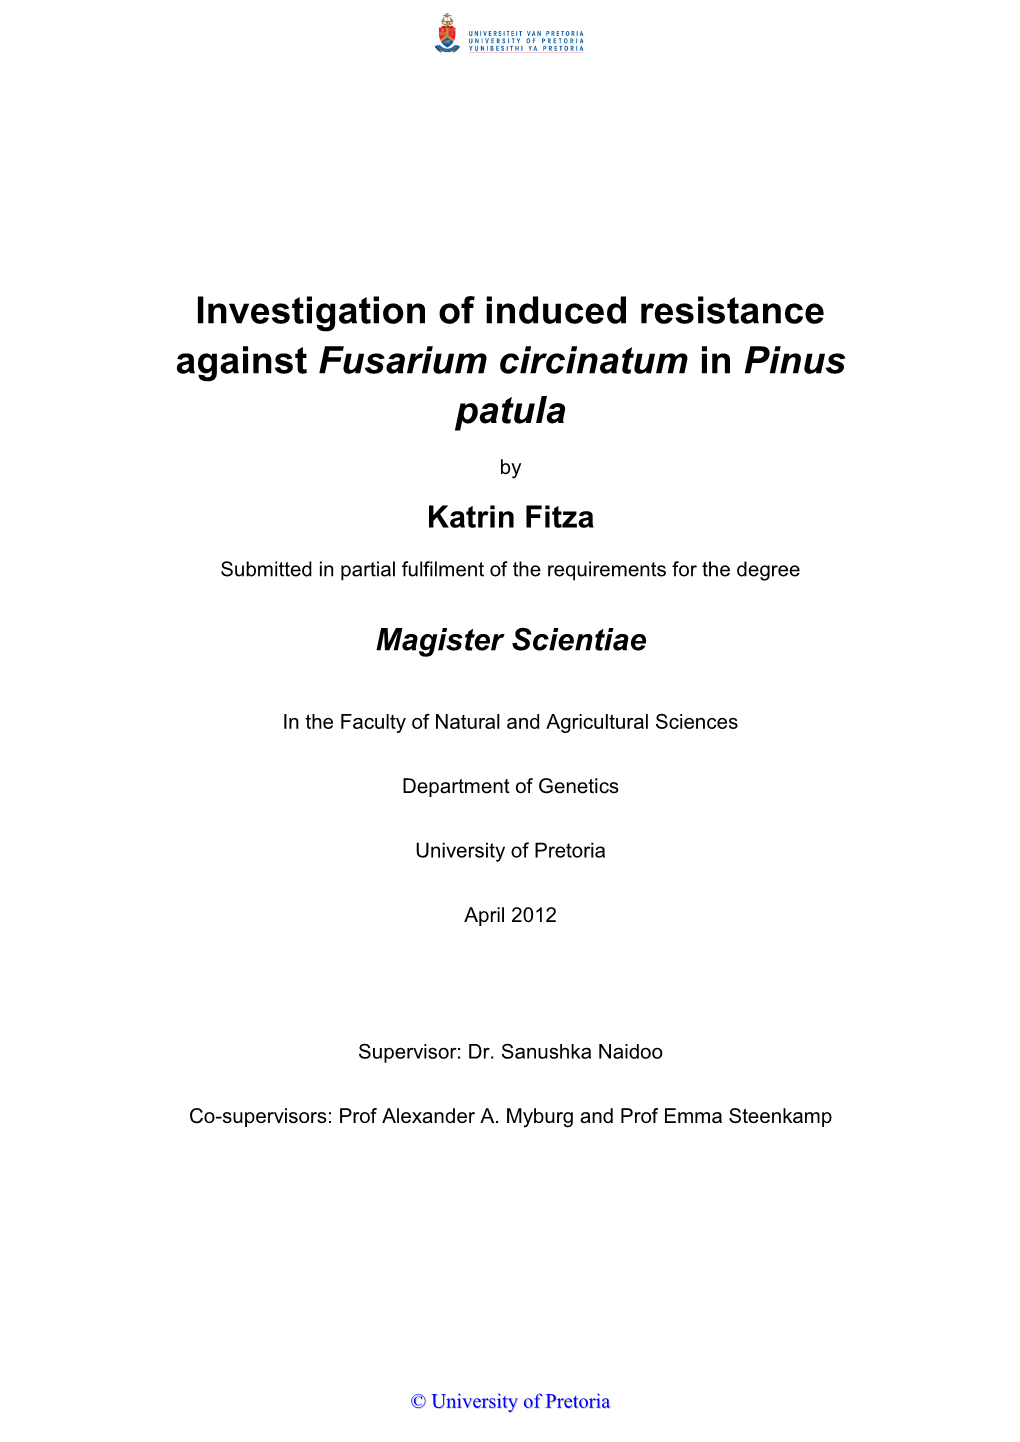 Investigation of Induced Resistance Against Fusarium Circinatum in Pinus Patula